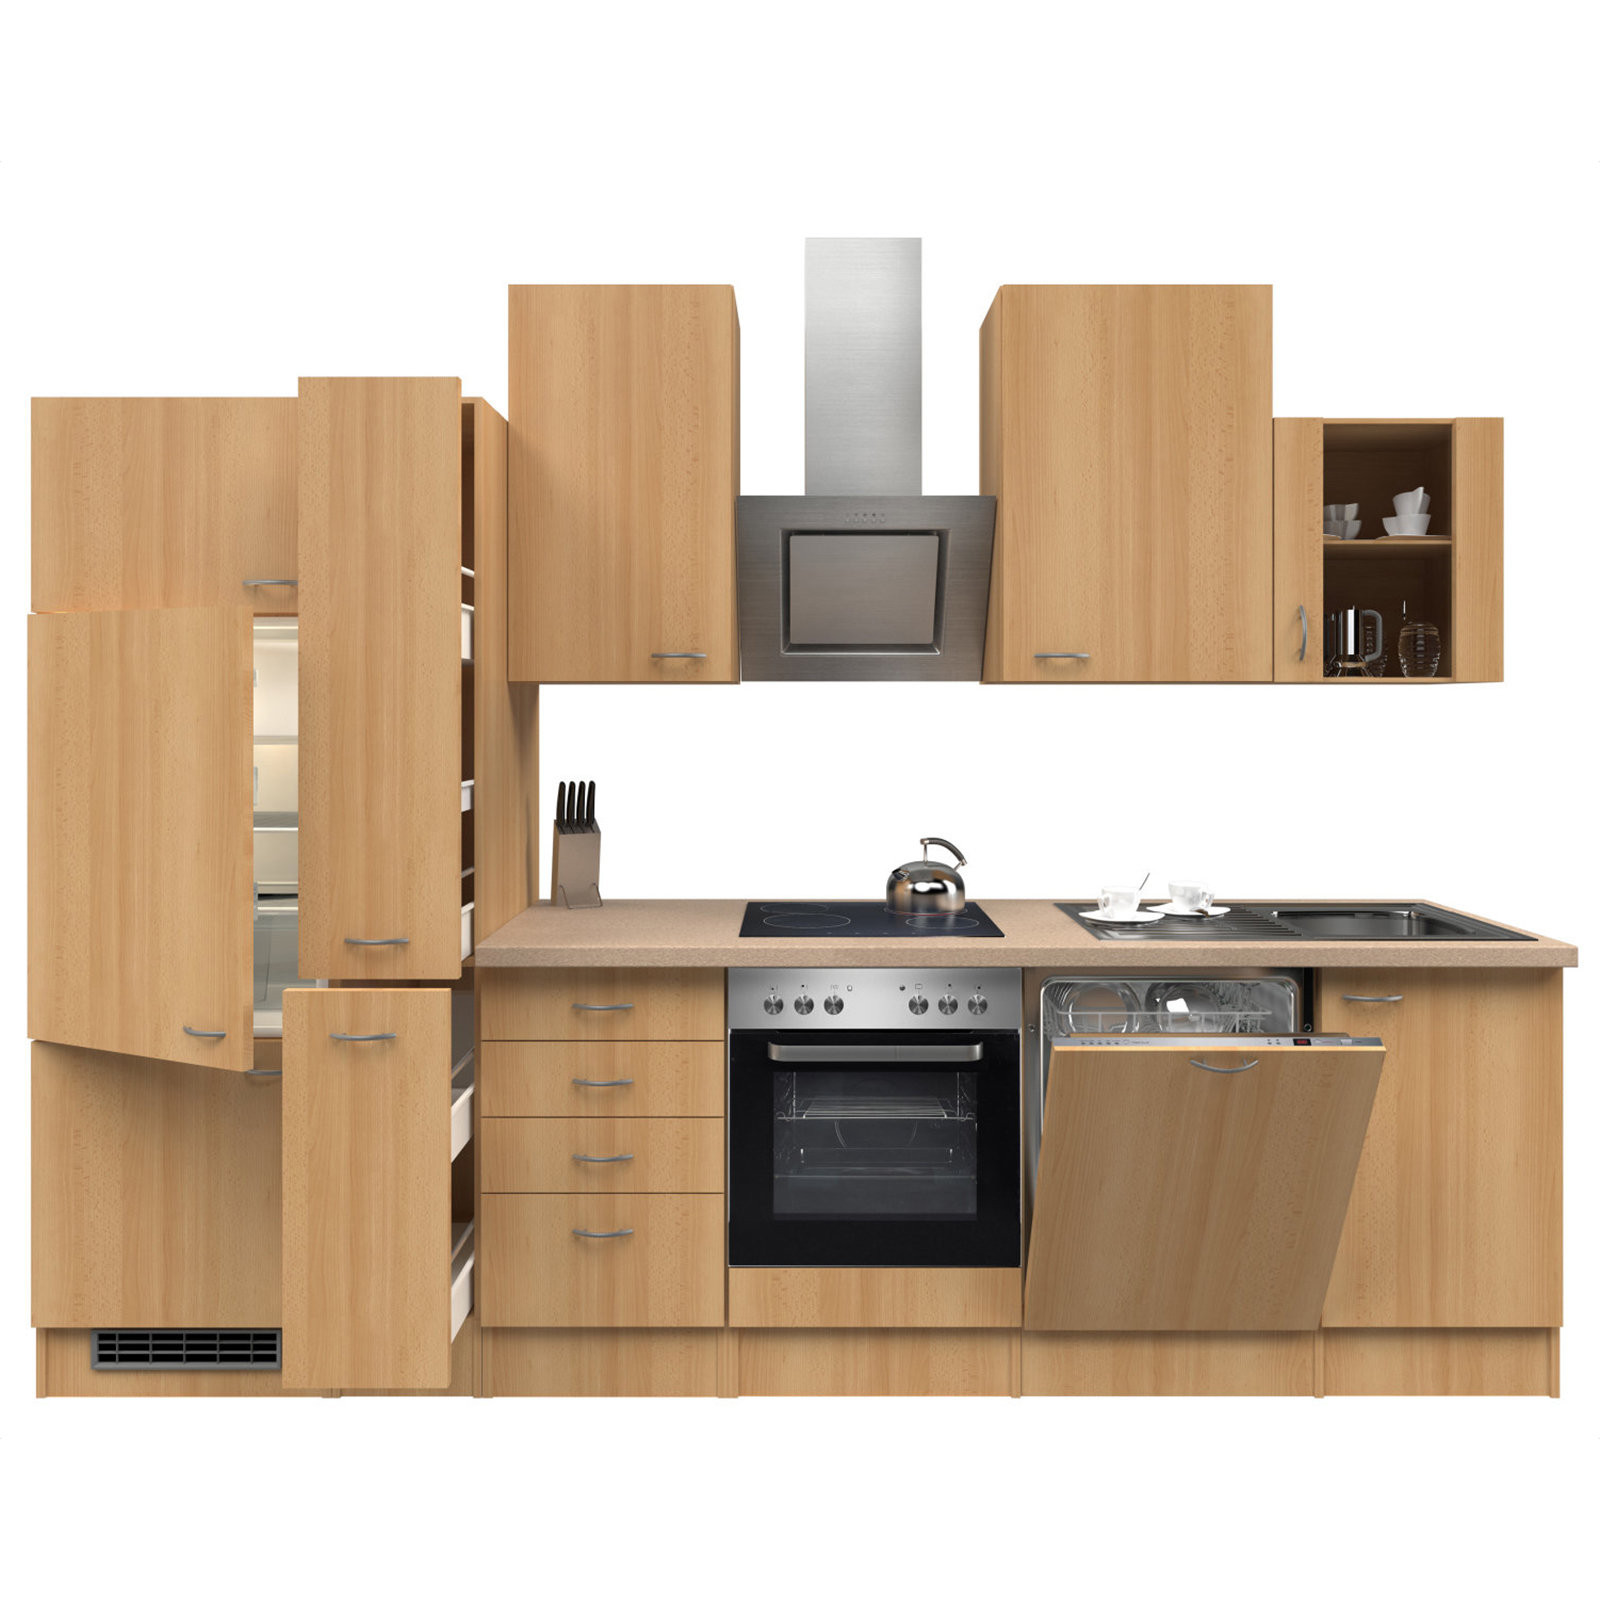 Küchenblock Mit Geräten
 Küchenblock NANO Buche mit E Geräten 310 cm